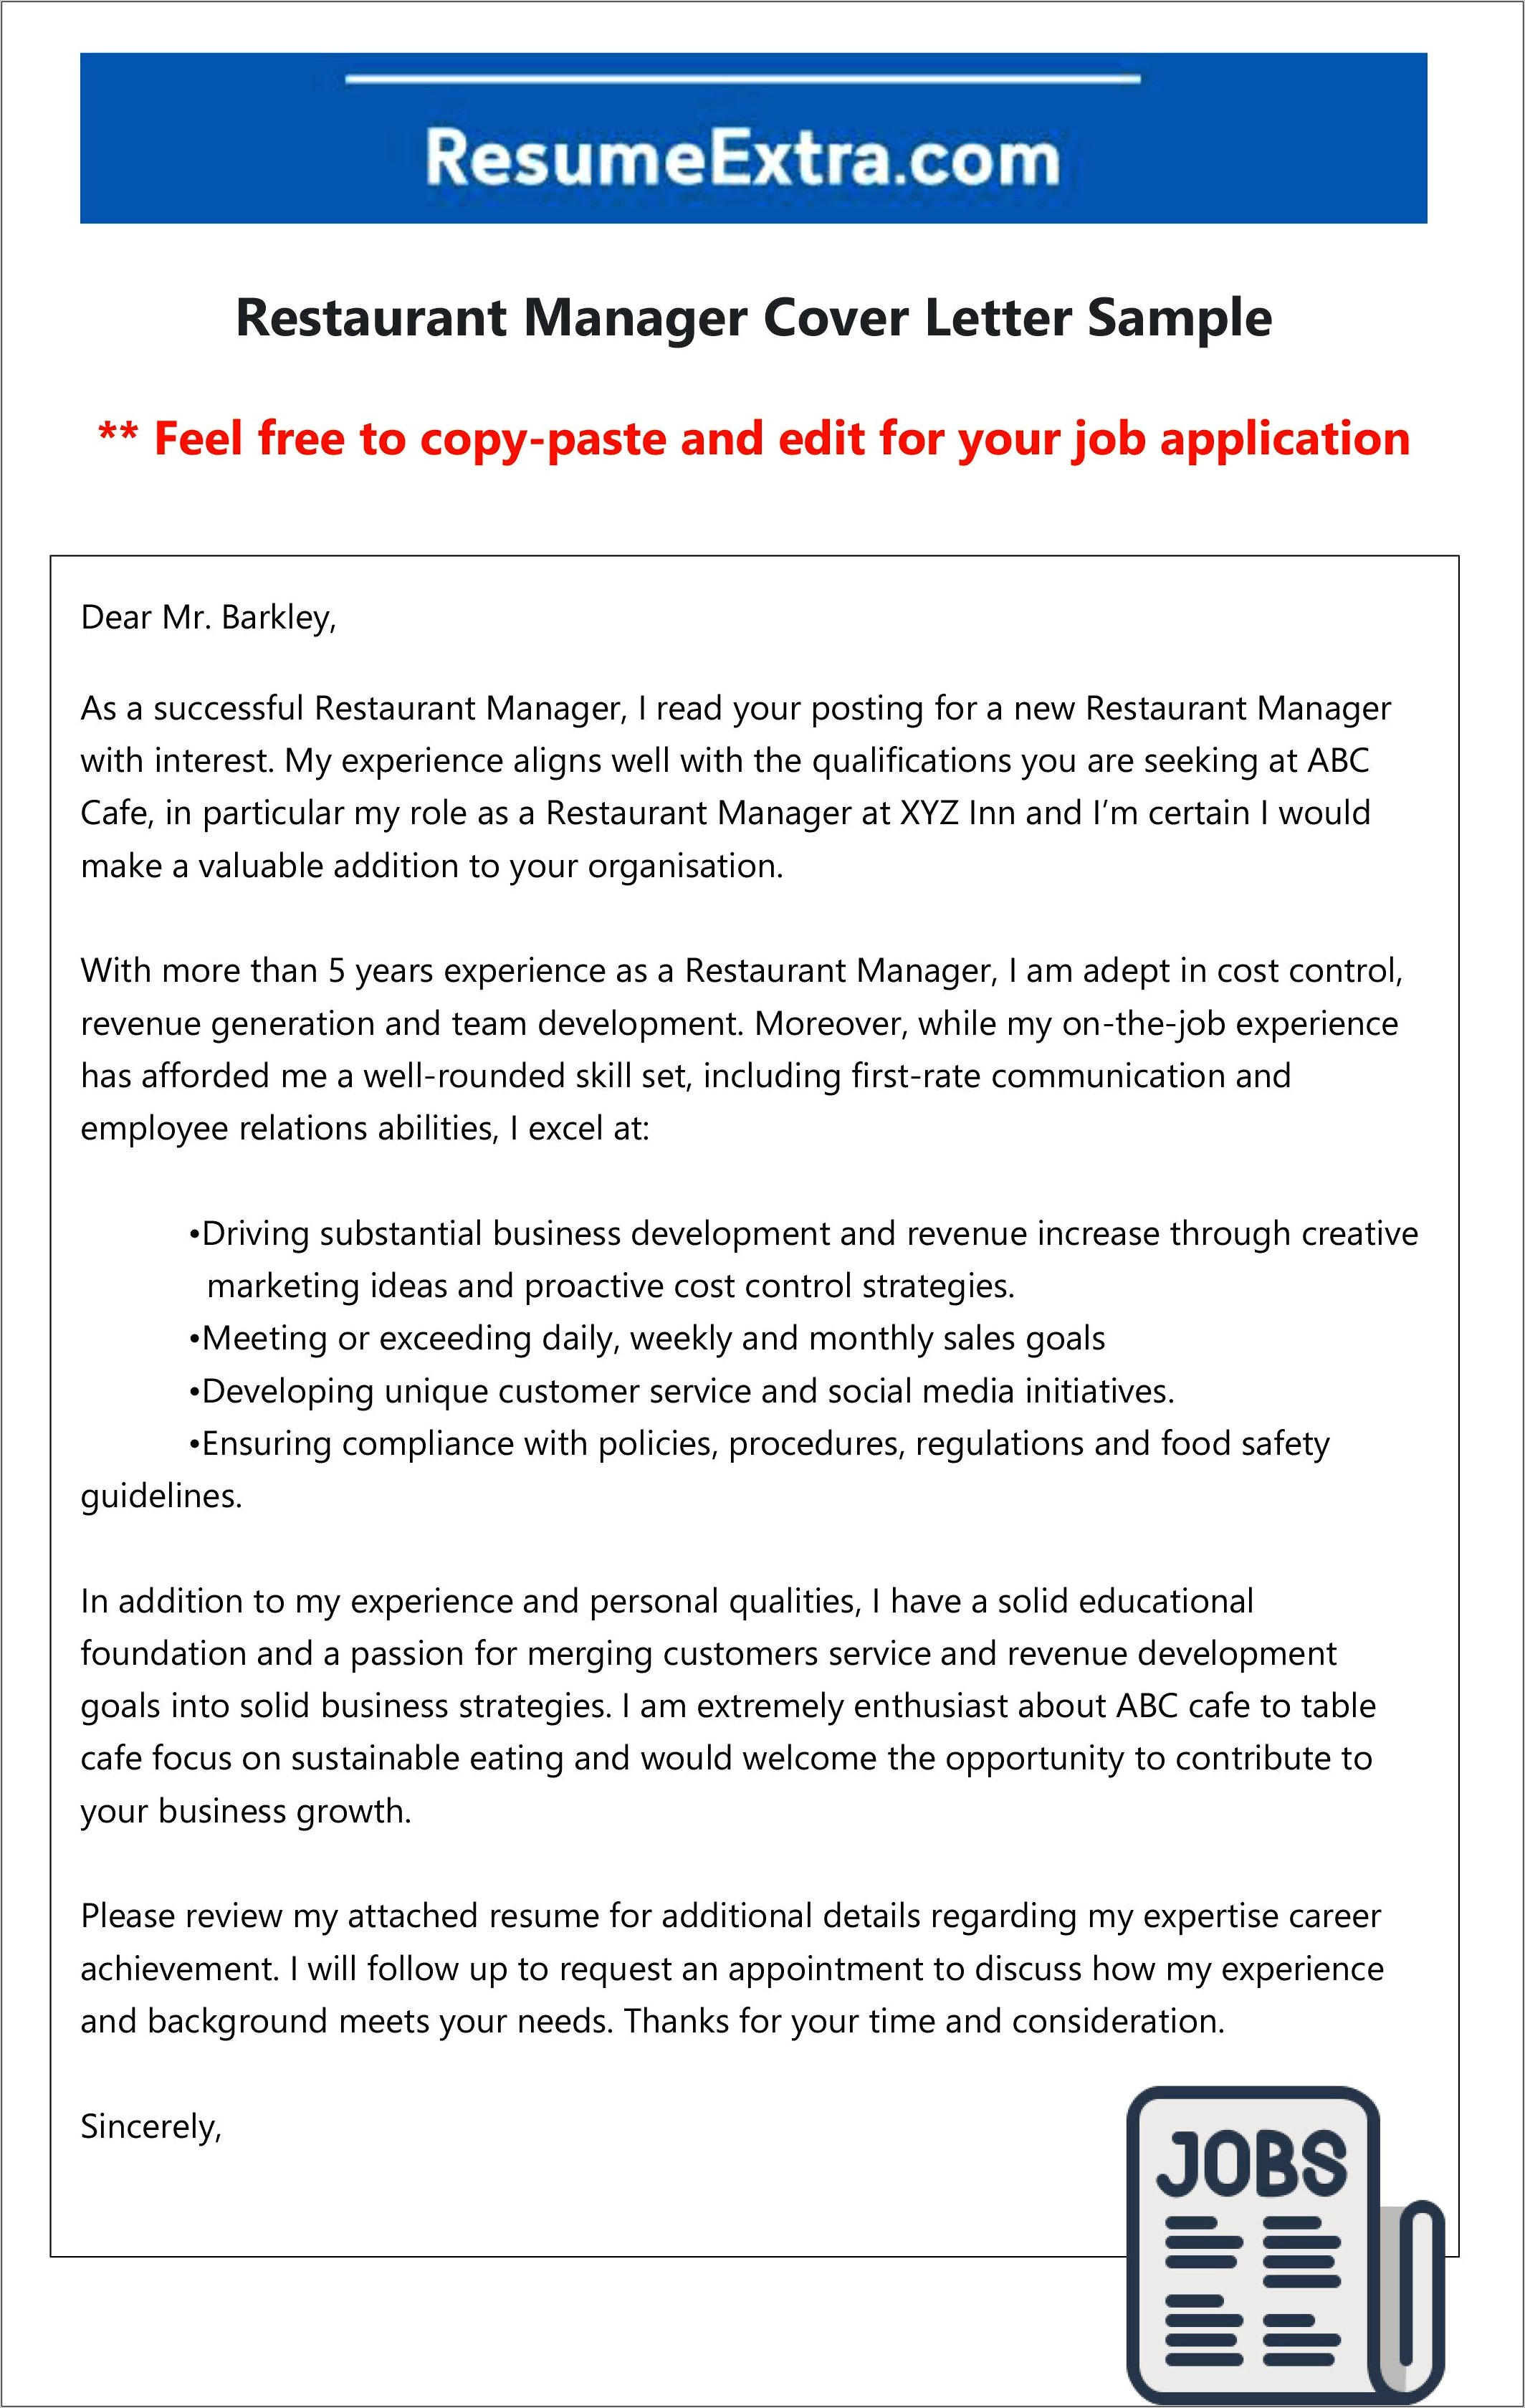 Resume Cover Letter For Restaurant Manager